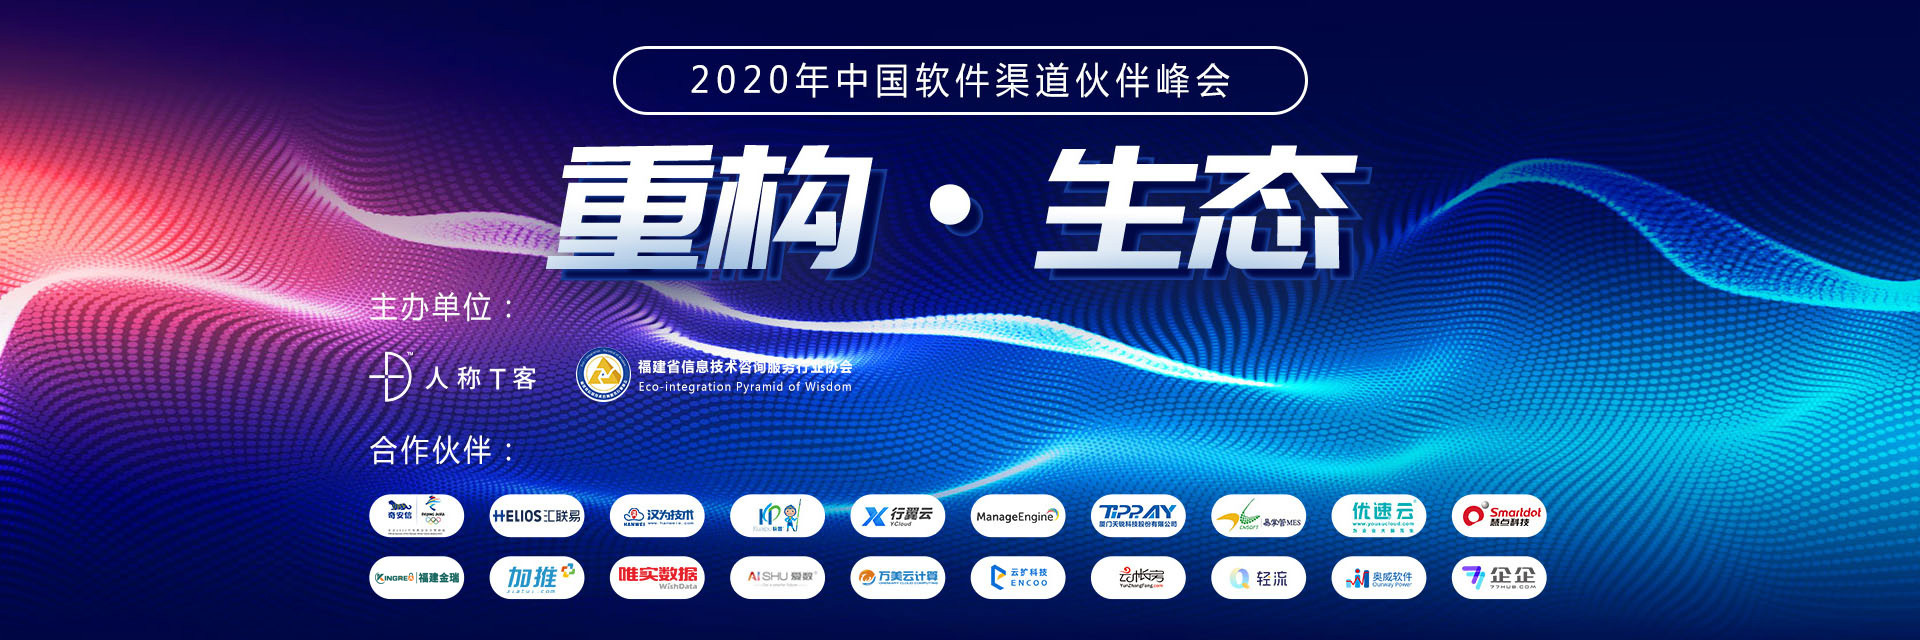 重构 生态|2020年中国软件渠道伙伴峰会——厦门